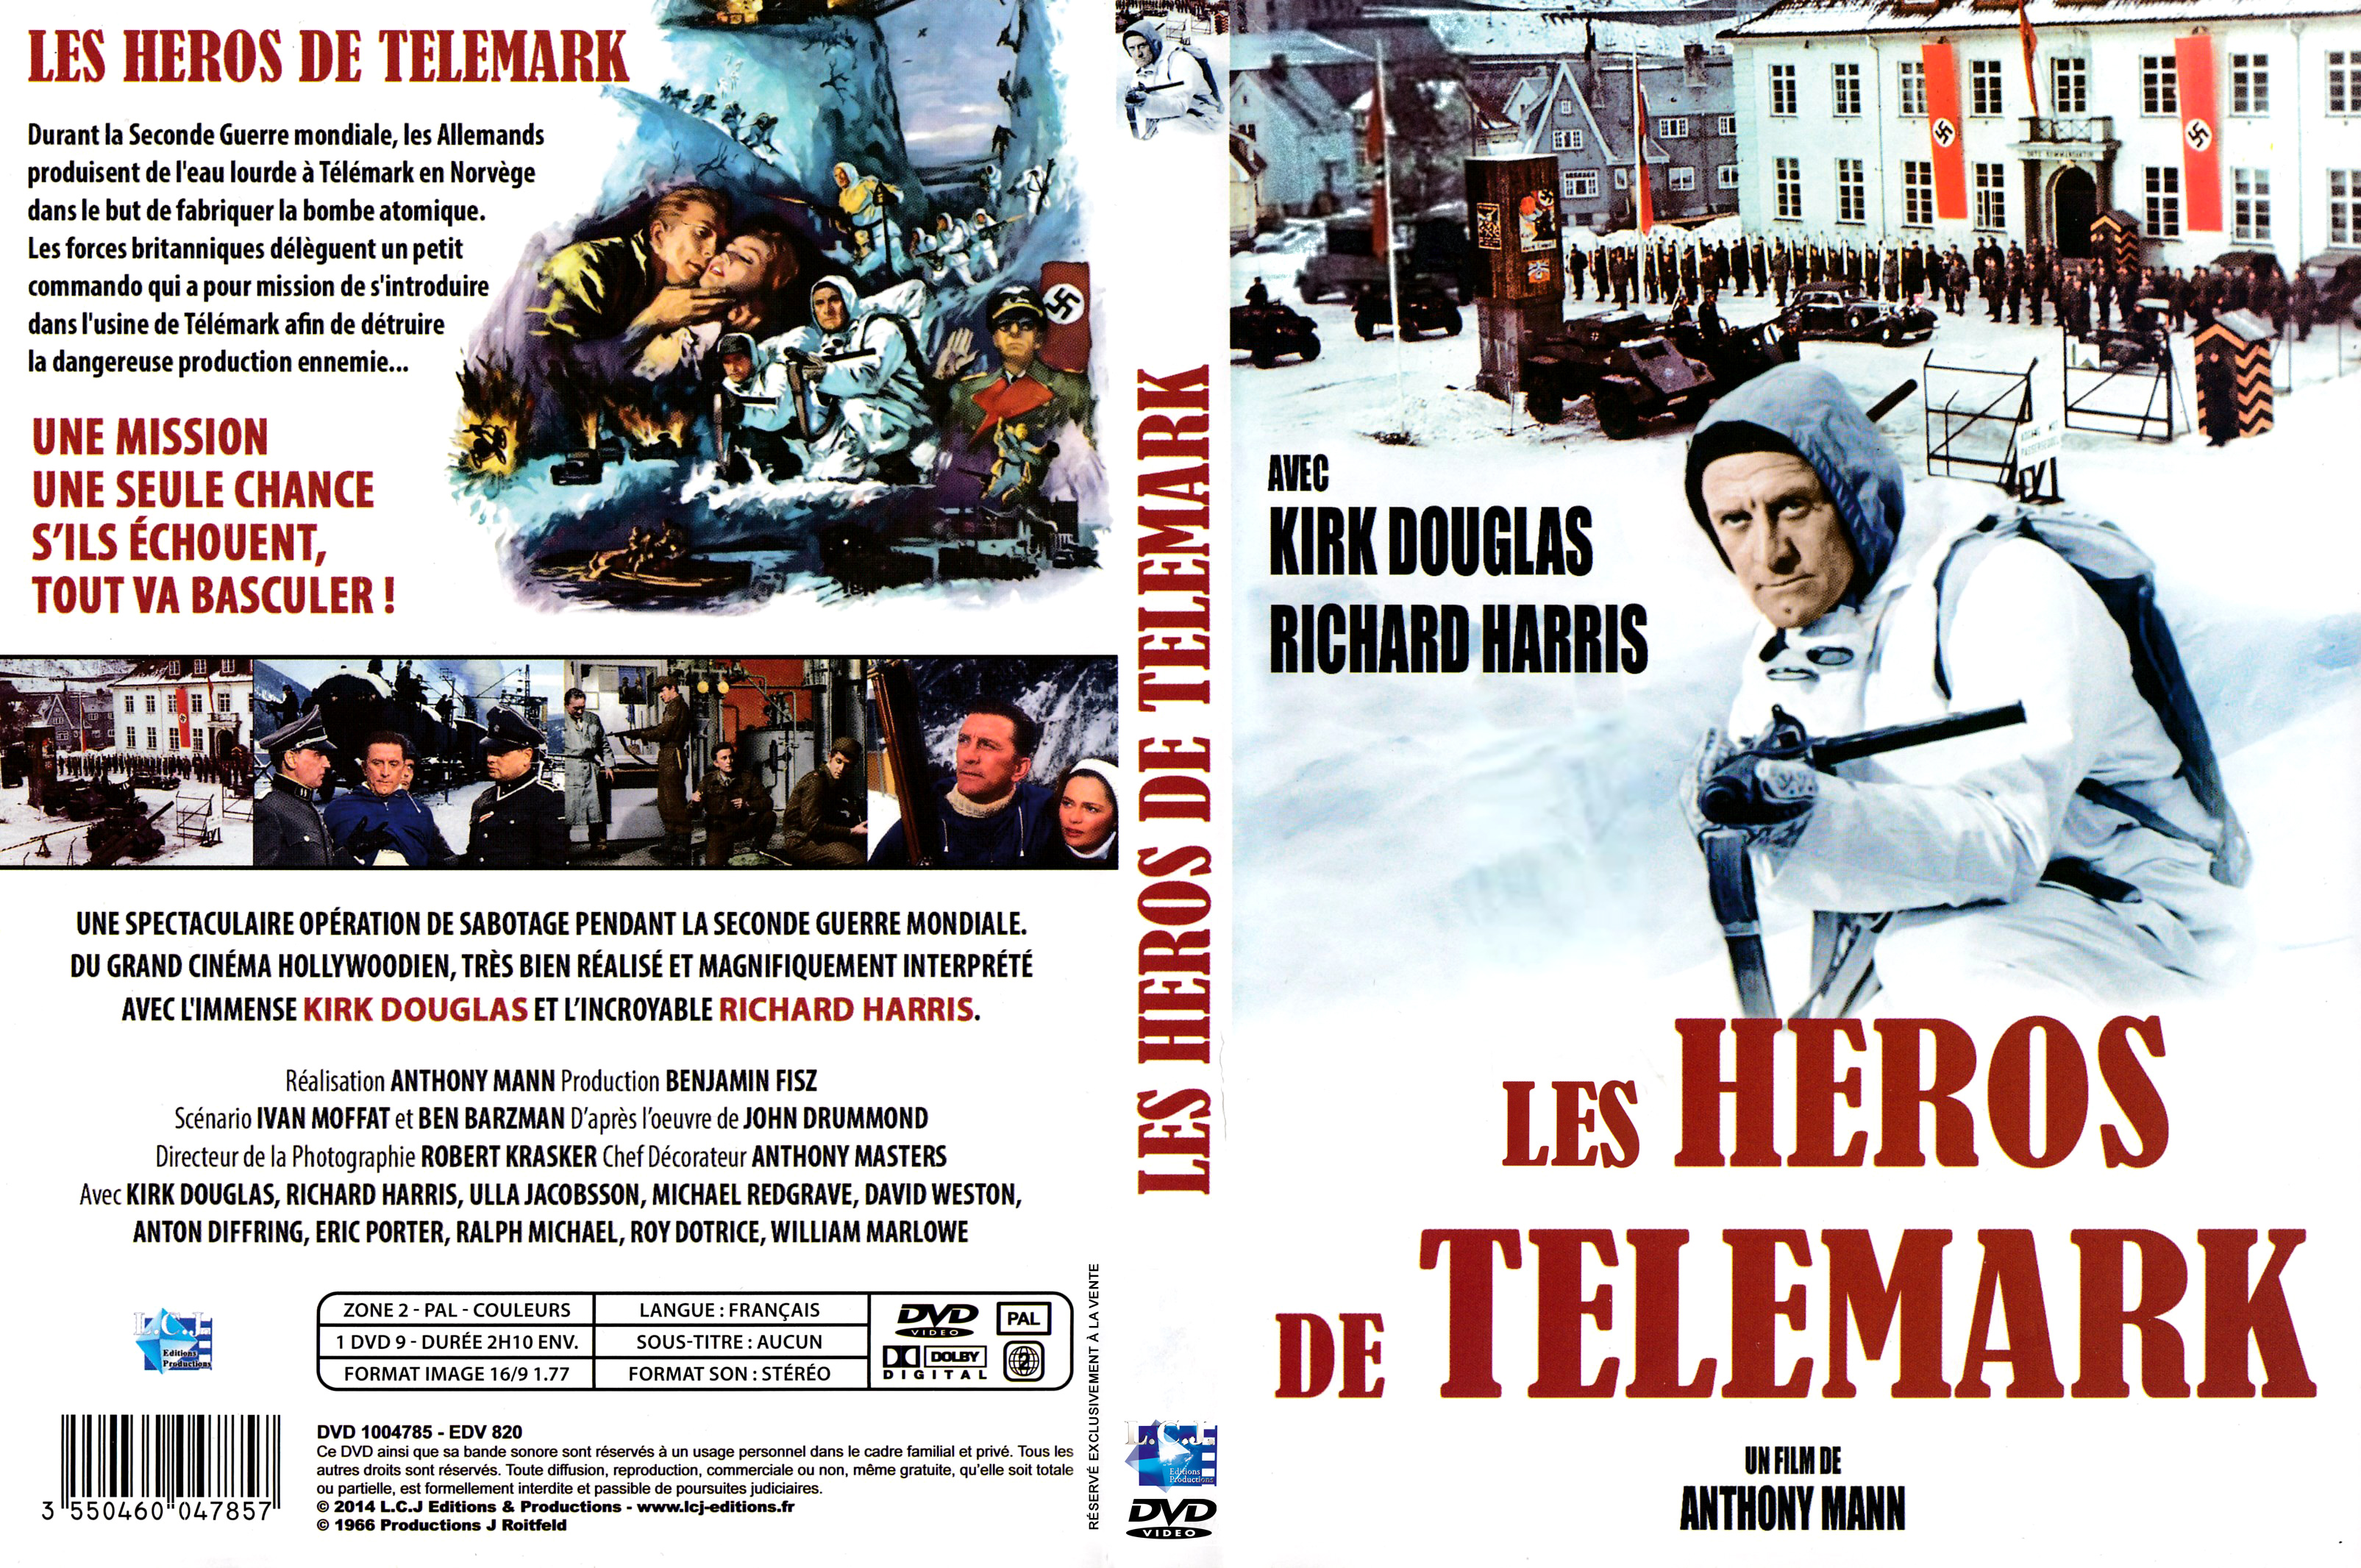 Jaquette DVD Les Hros de Tlmark v2